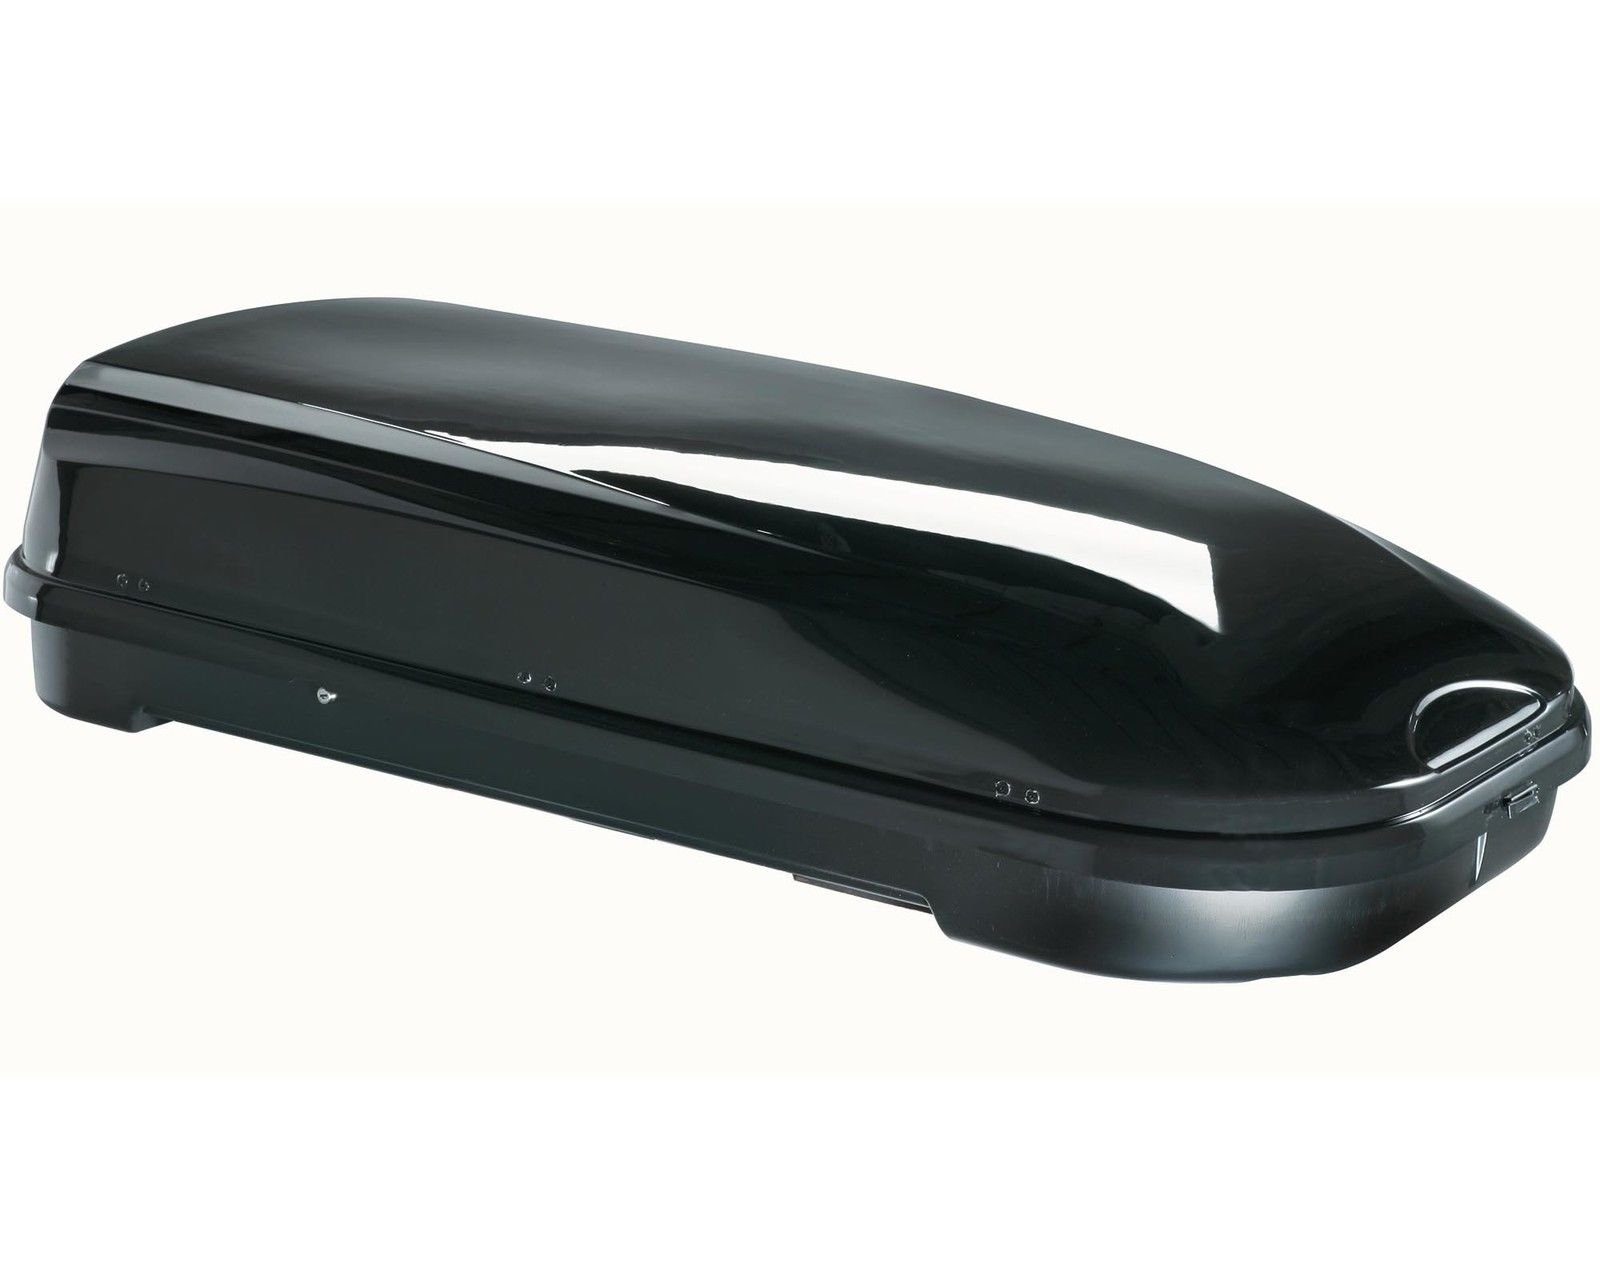 VDP Dachbox, (ALLES IN EINEM - Sparen Sie sich die Auswahl mehrerer Komponenten für Ihre perfekte Transportlösung - Mit dem Set aus Dachbox und Dachträger erhalten Sie ein leicht zu montierendes Komplettpaket mit allen Befestigungsteilen. Die glänzend-schwarze Box überzeugt mit ihrem edlen Design und viel Platz), Dachbox VDP-FL580 Relingträger Alu kompatibel mit BMW X3 E83 04-10 abschließbar